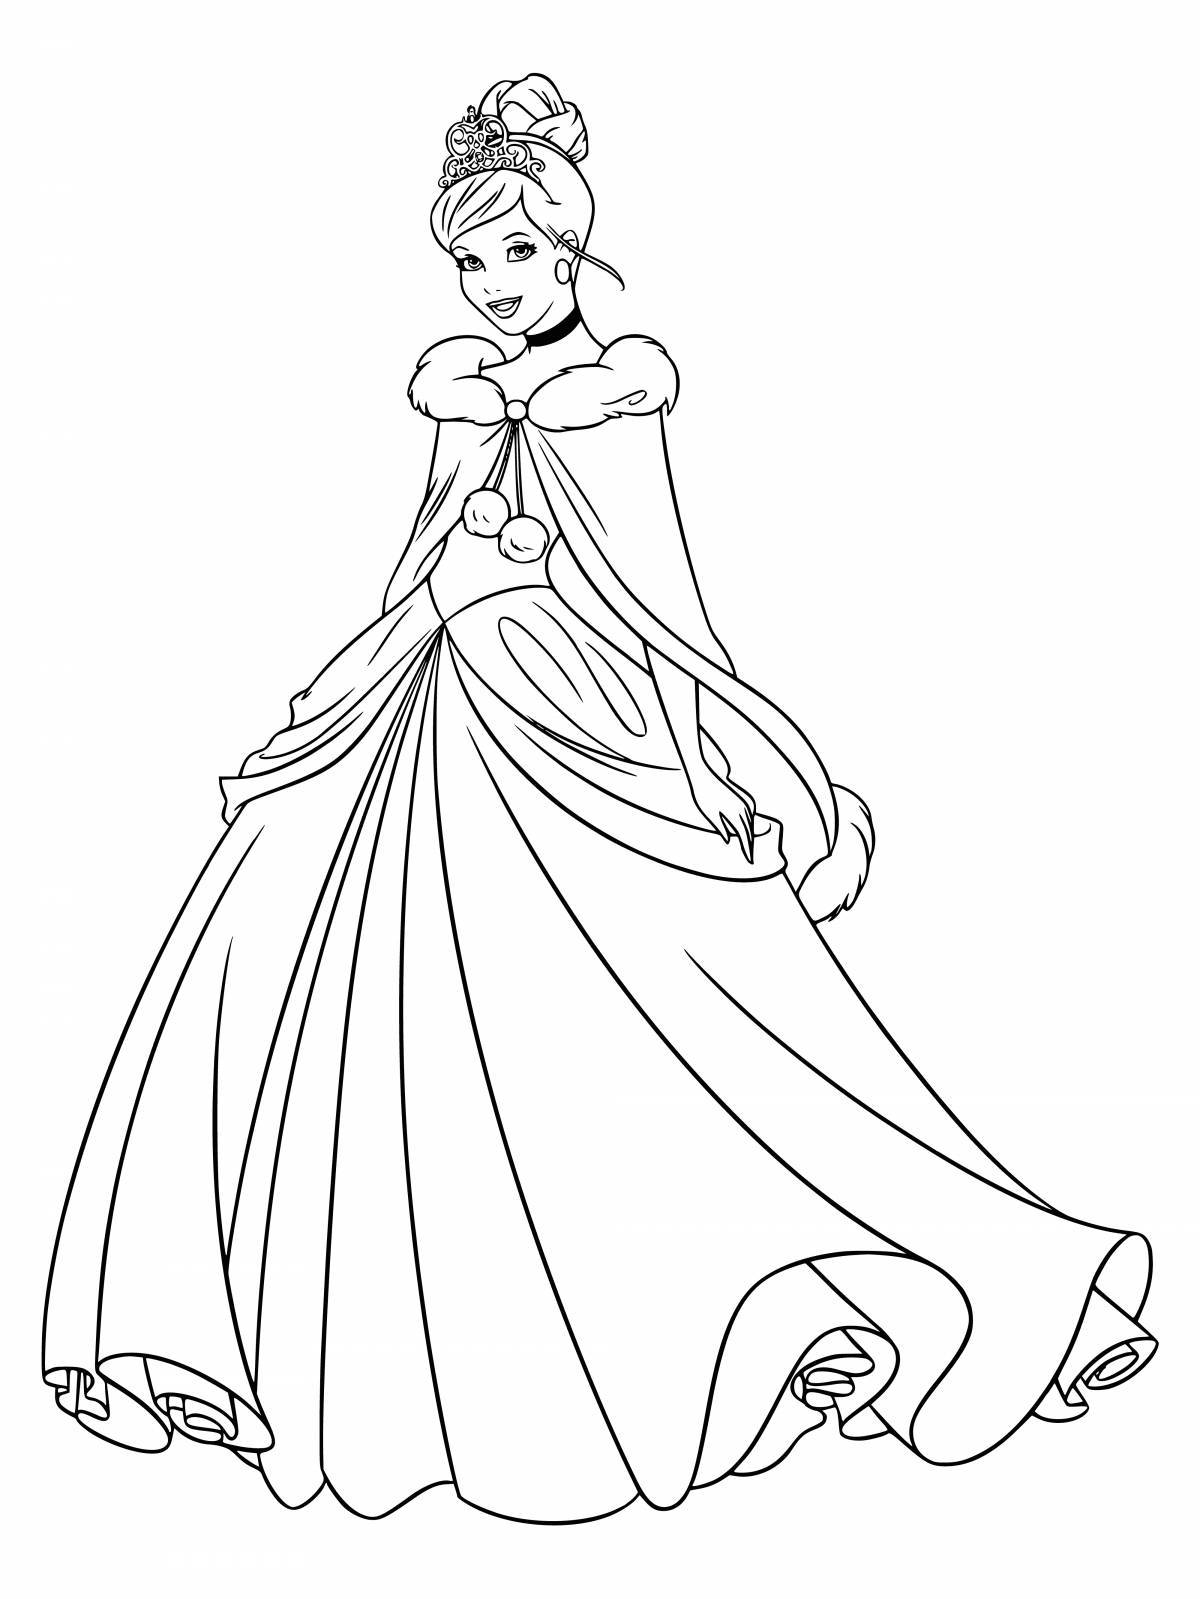 Joyful coloring of disney princesses in beautiful dresses